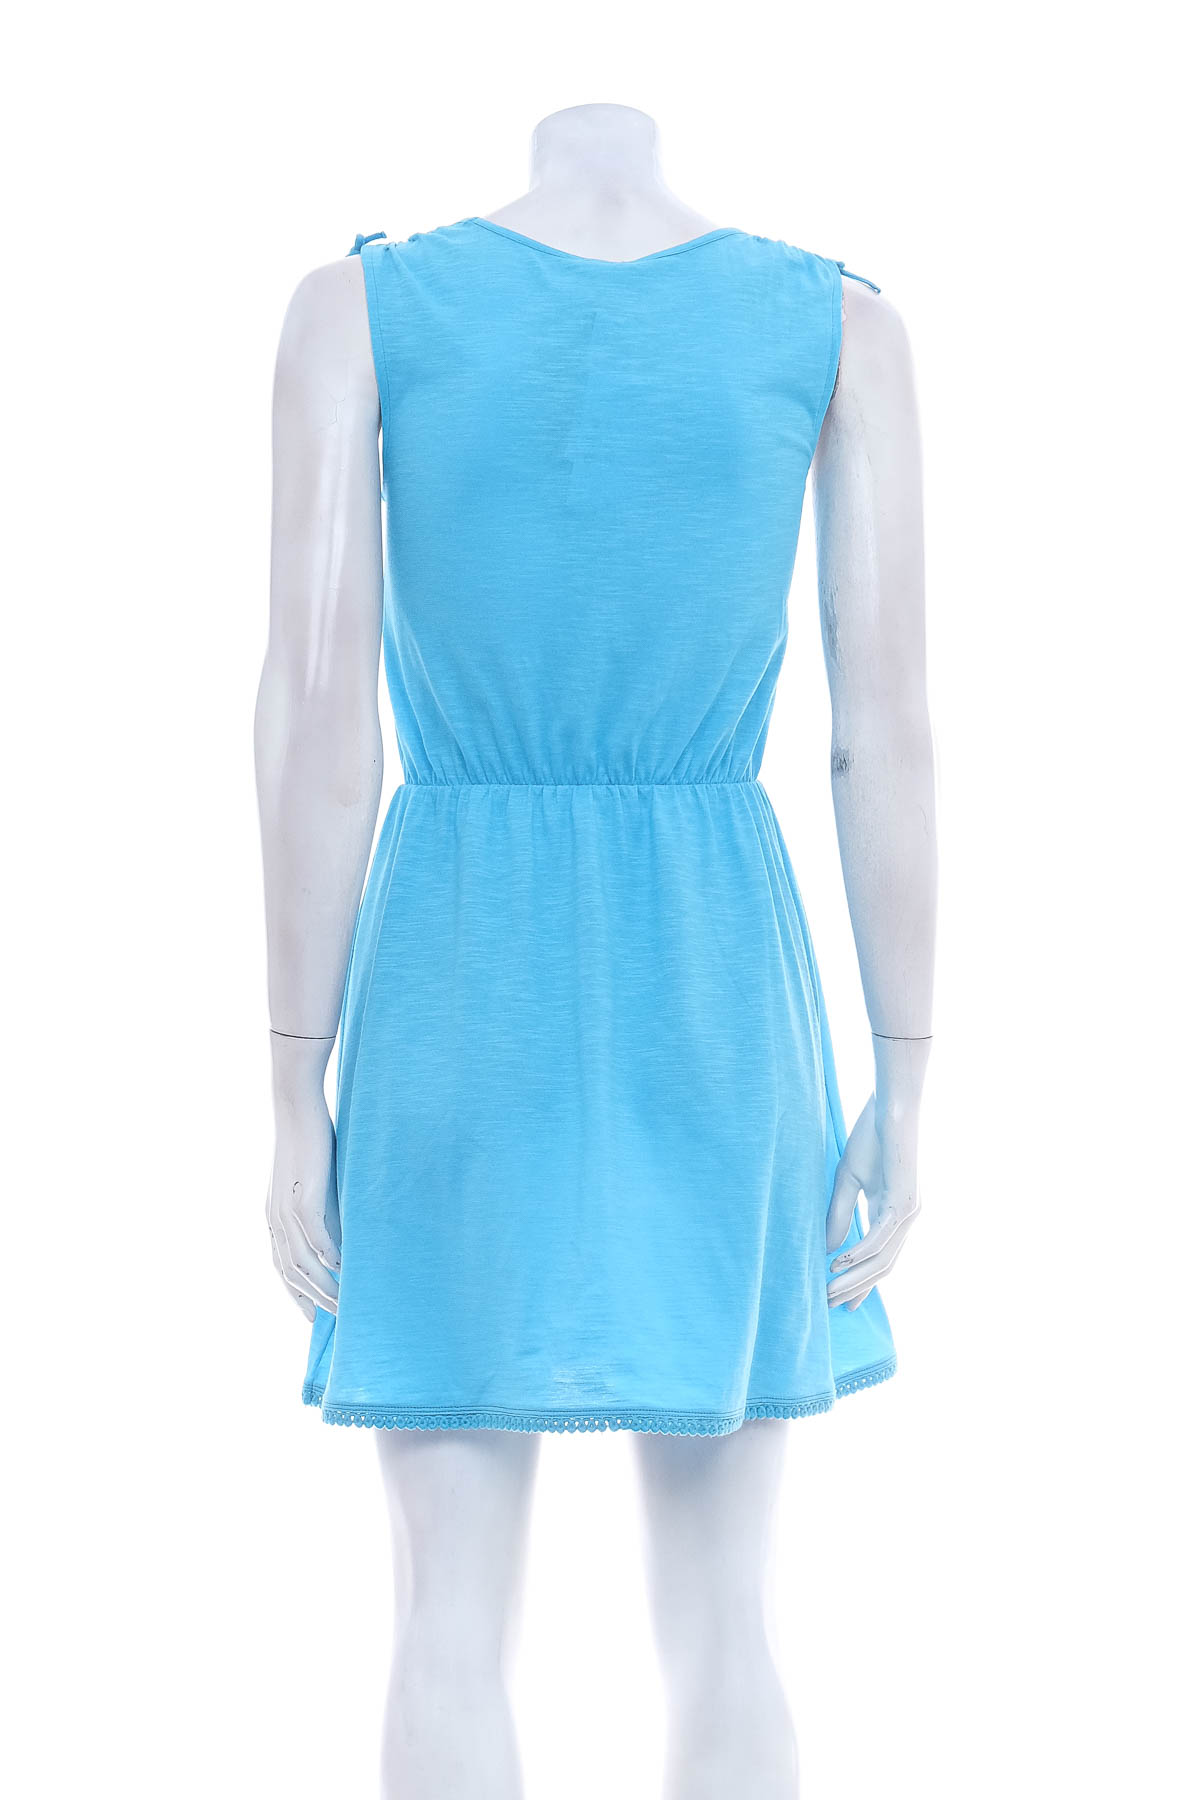 Παιδικό φόρεμα - United Colors of Benetton - 1